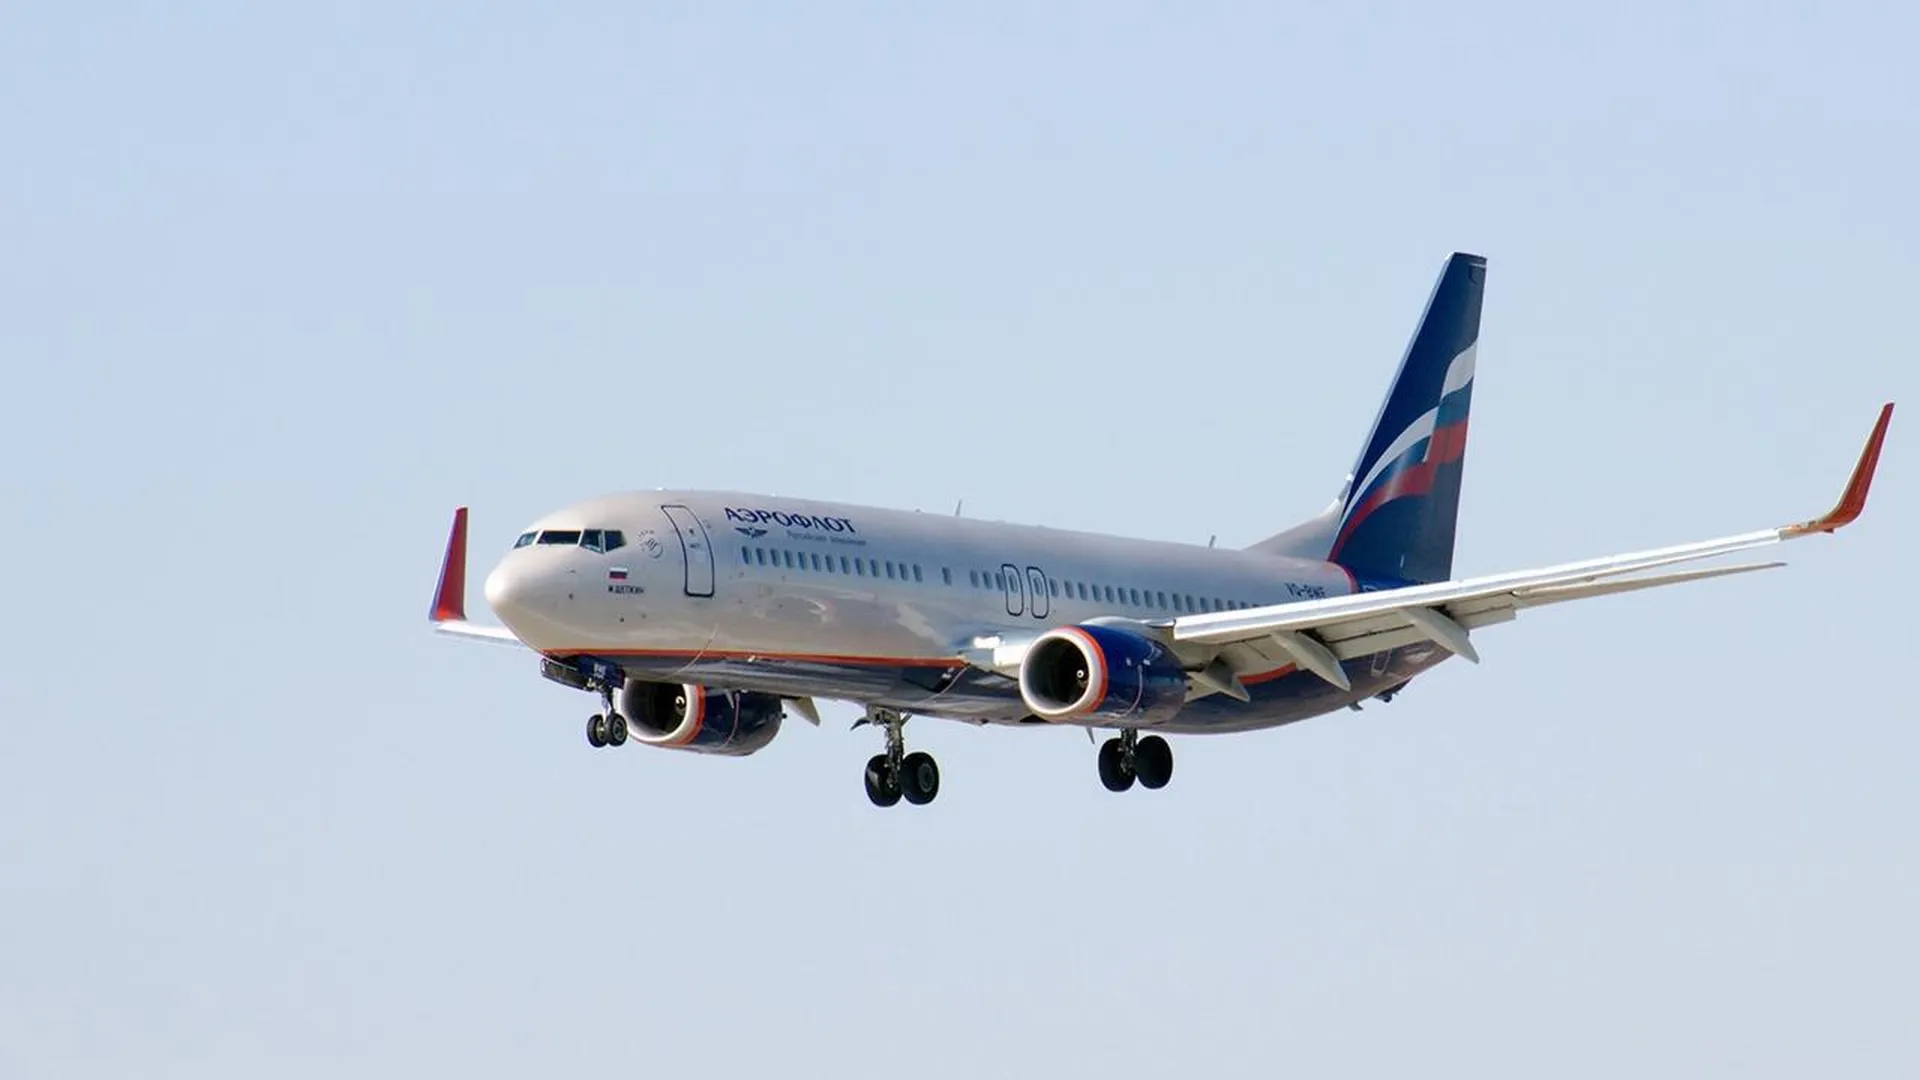 Авиаэксперт Романов объяснил, почему не стоит бояться неполадок в работе самолетов